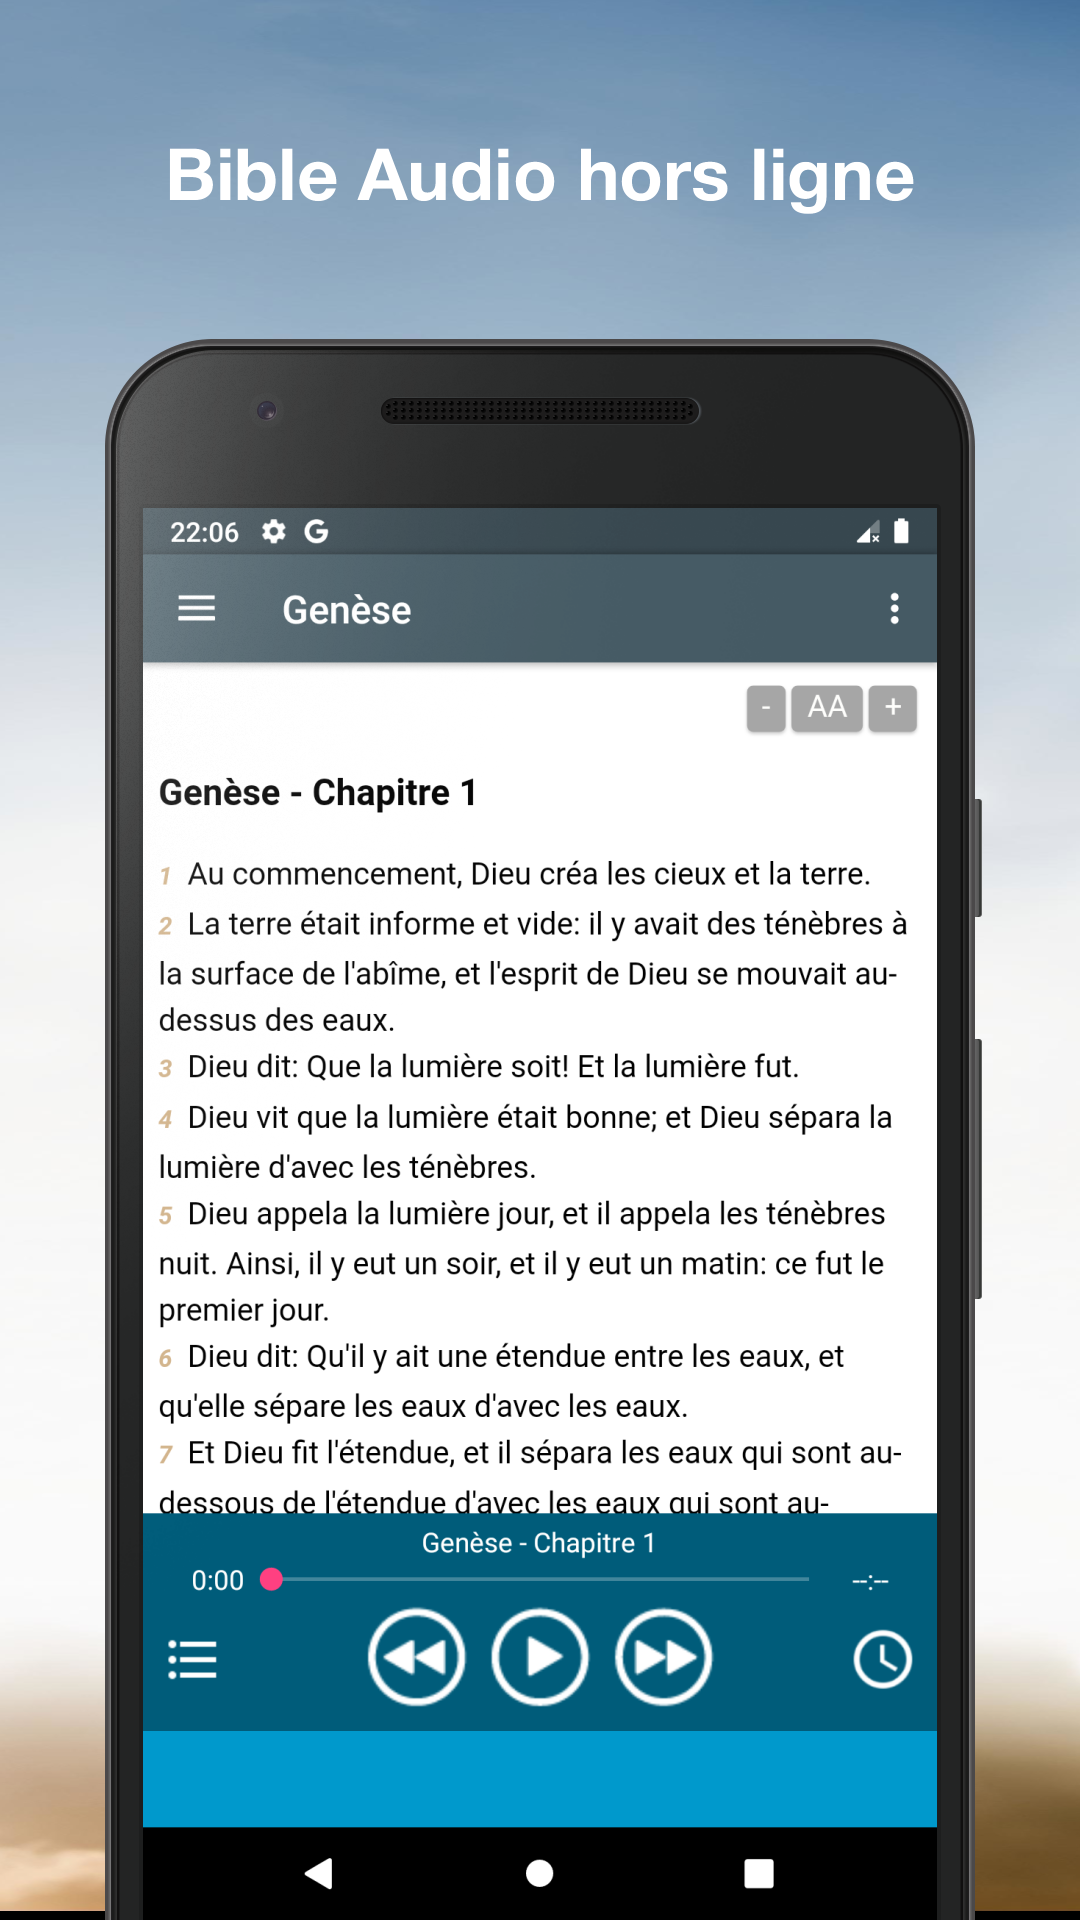 Bible Audio en Français mp3 APK 3.1.1158 for Android – Download Bible Audio  en Français mp3 XAPK (APK Bundle) Latest Version from APKFab.com